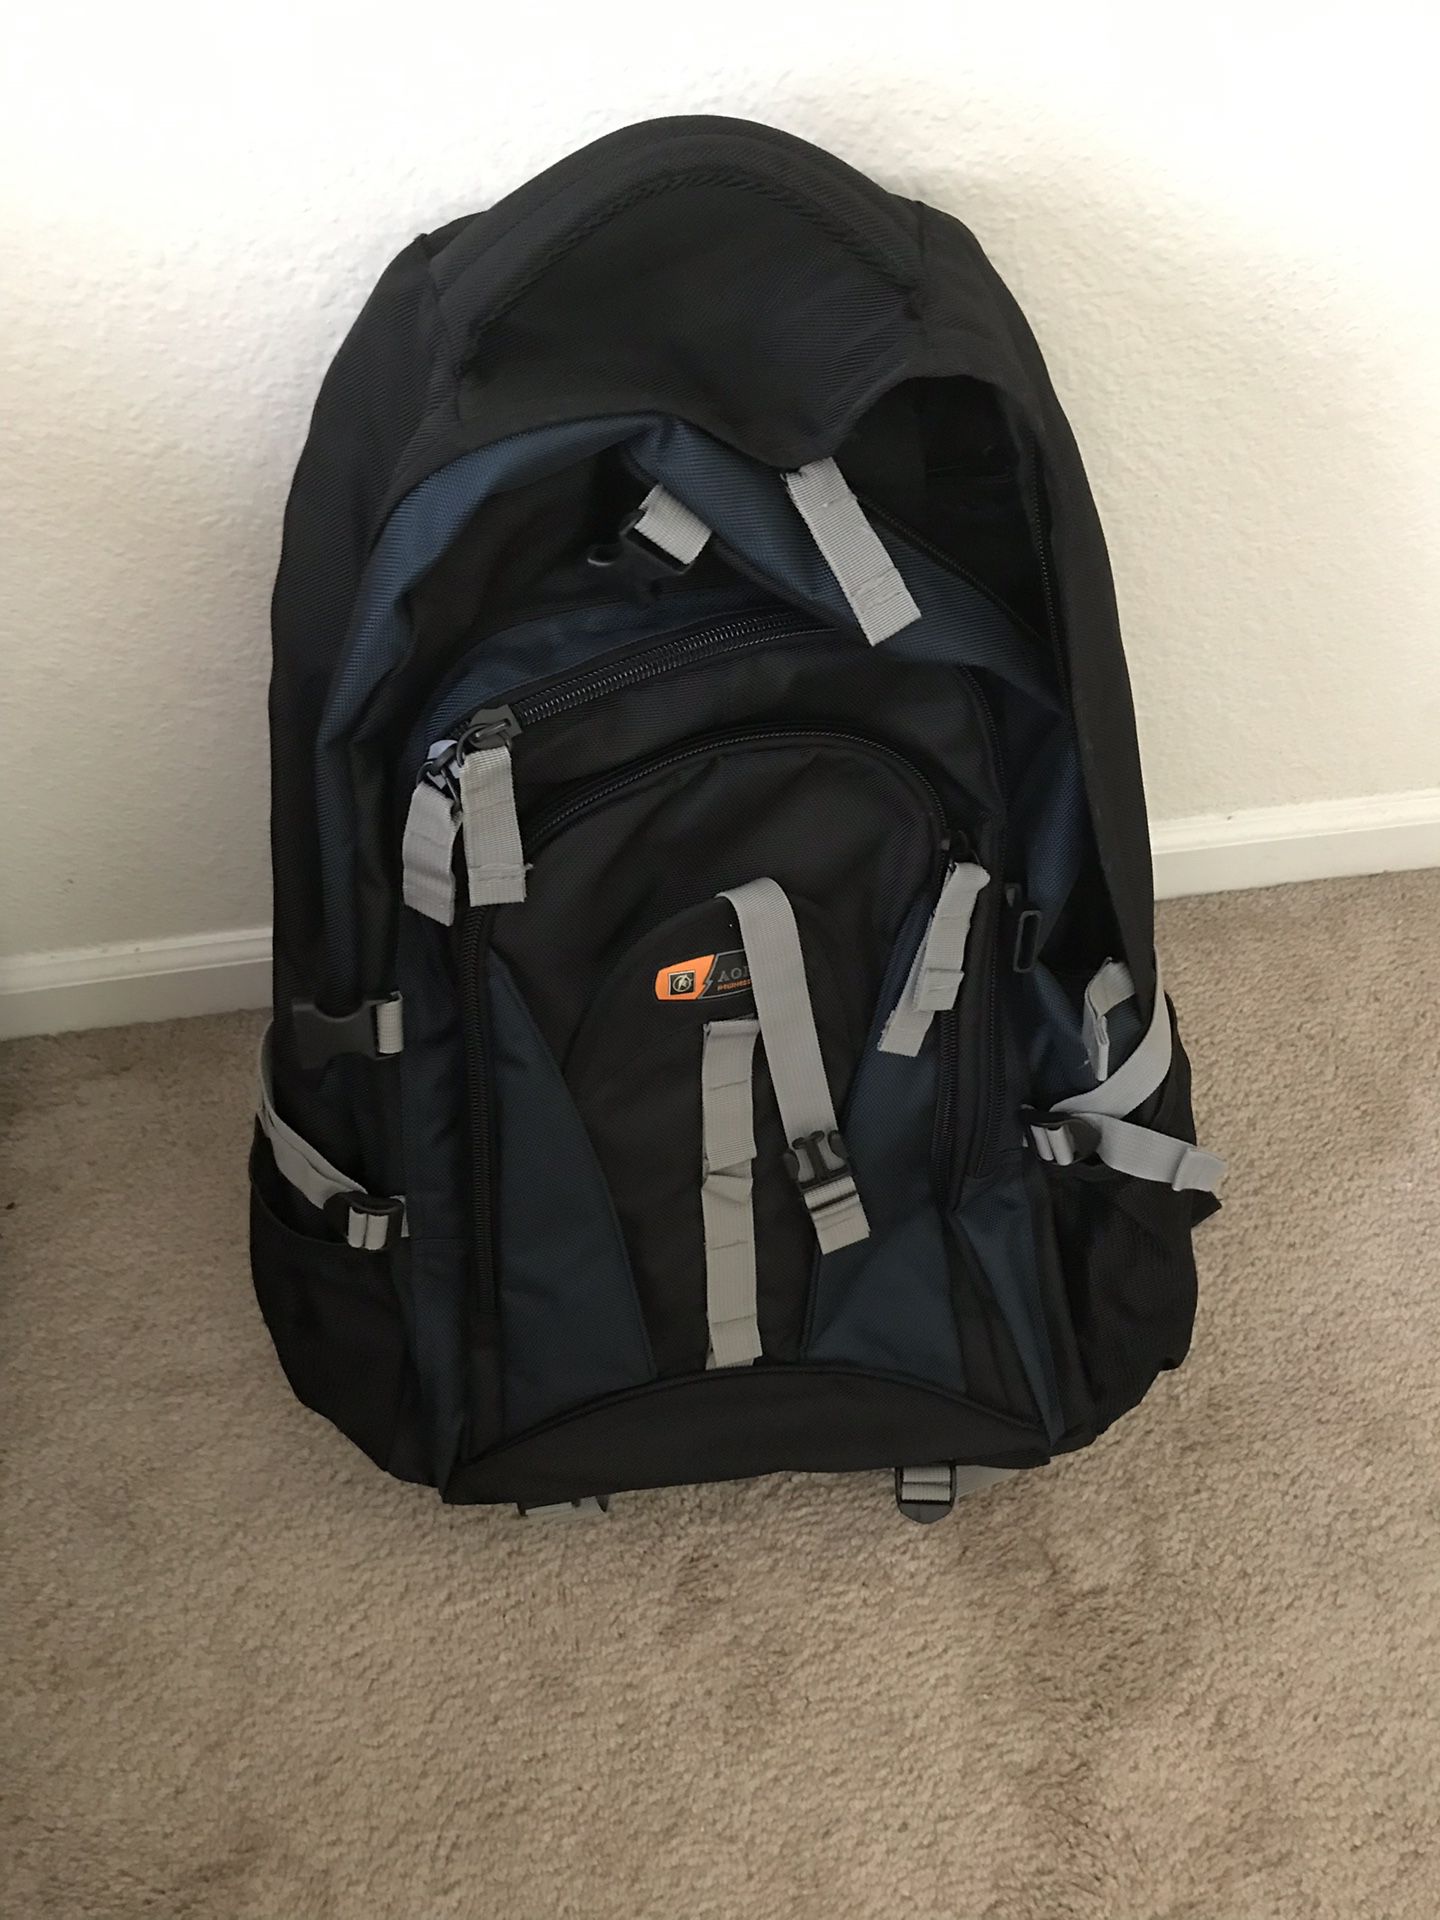 Backpack-hiking/travel